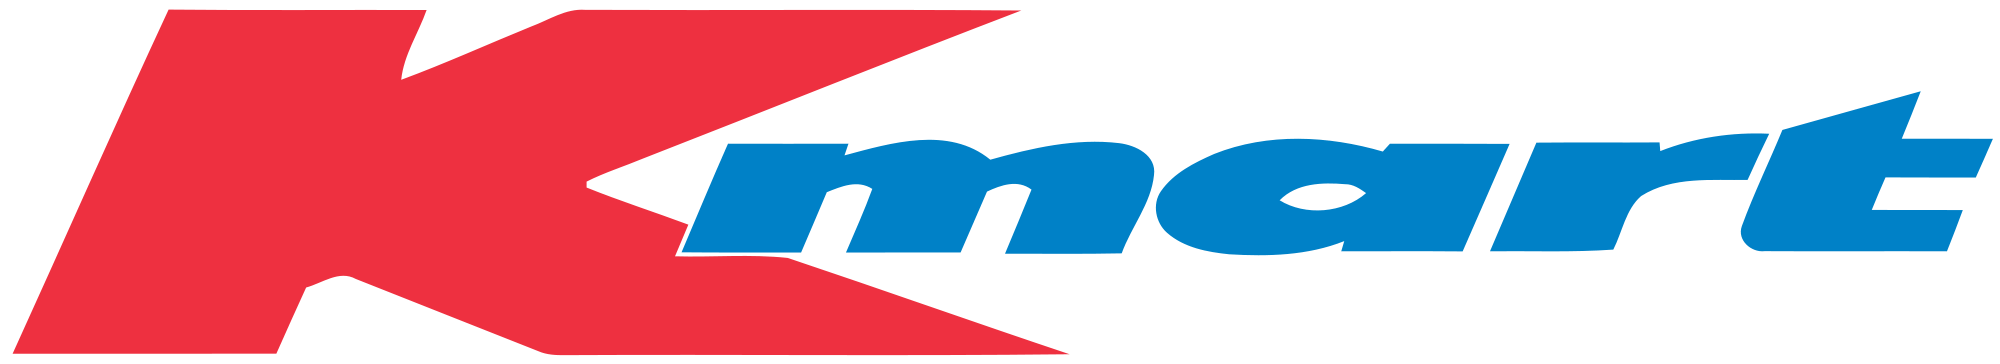 Old Kmart Logo Logodix